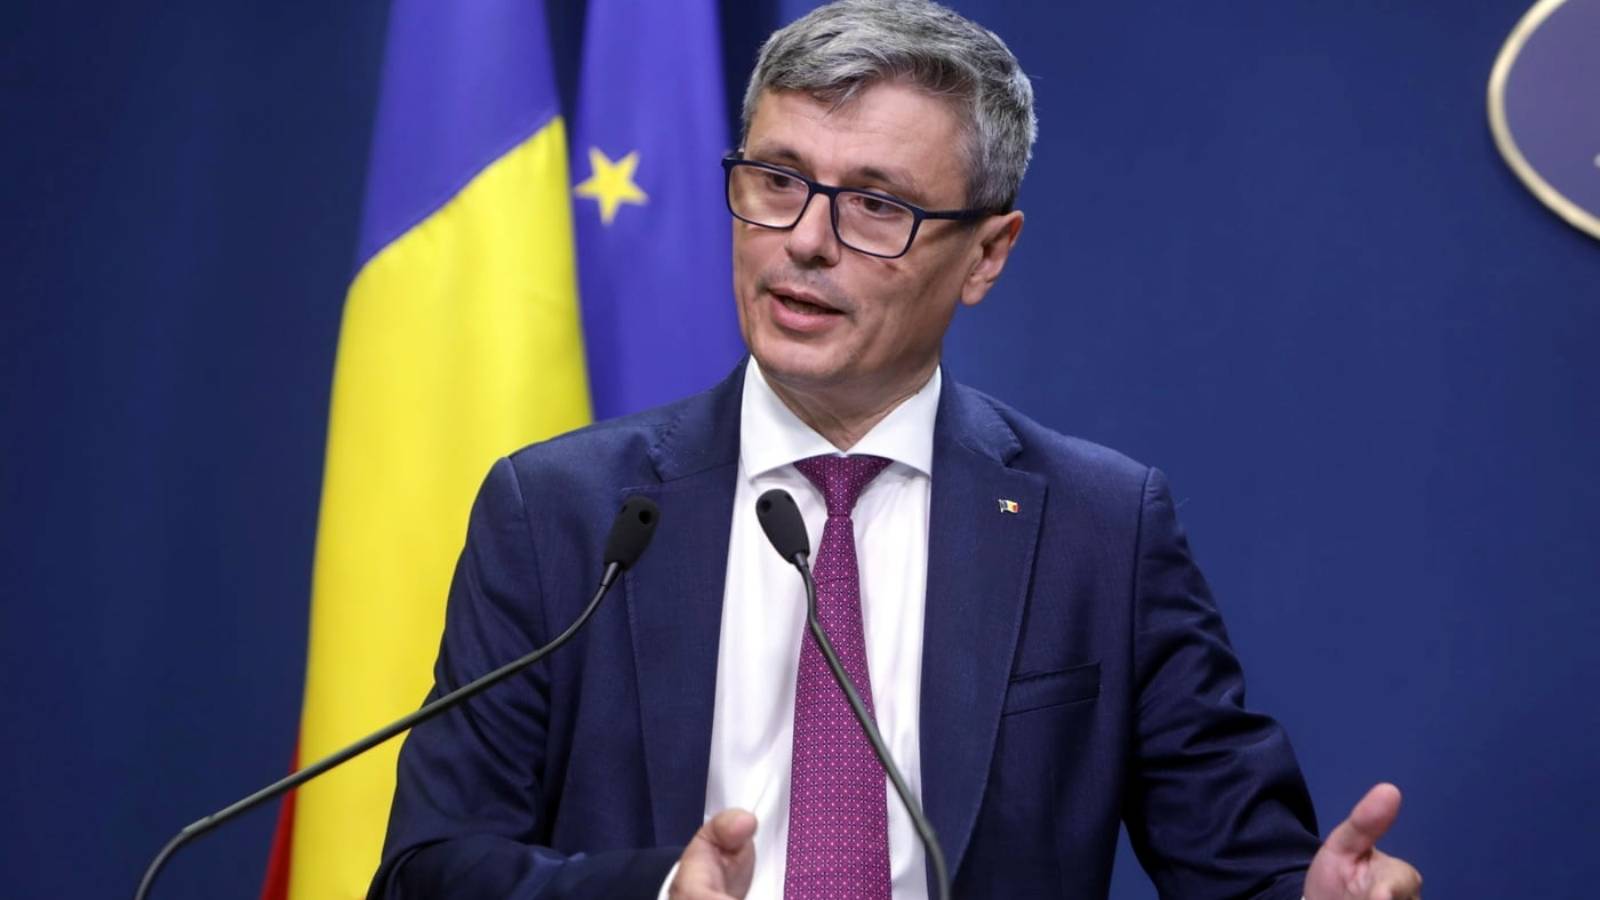 Il Ministro dell'Energia ha adottato misure importanti con l'ultima legge Romania